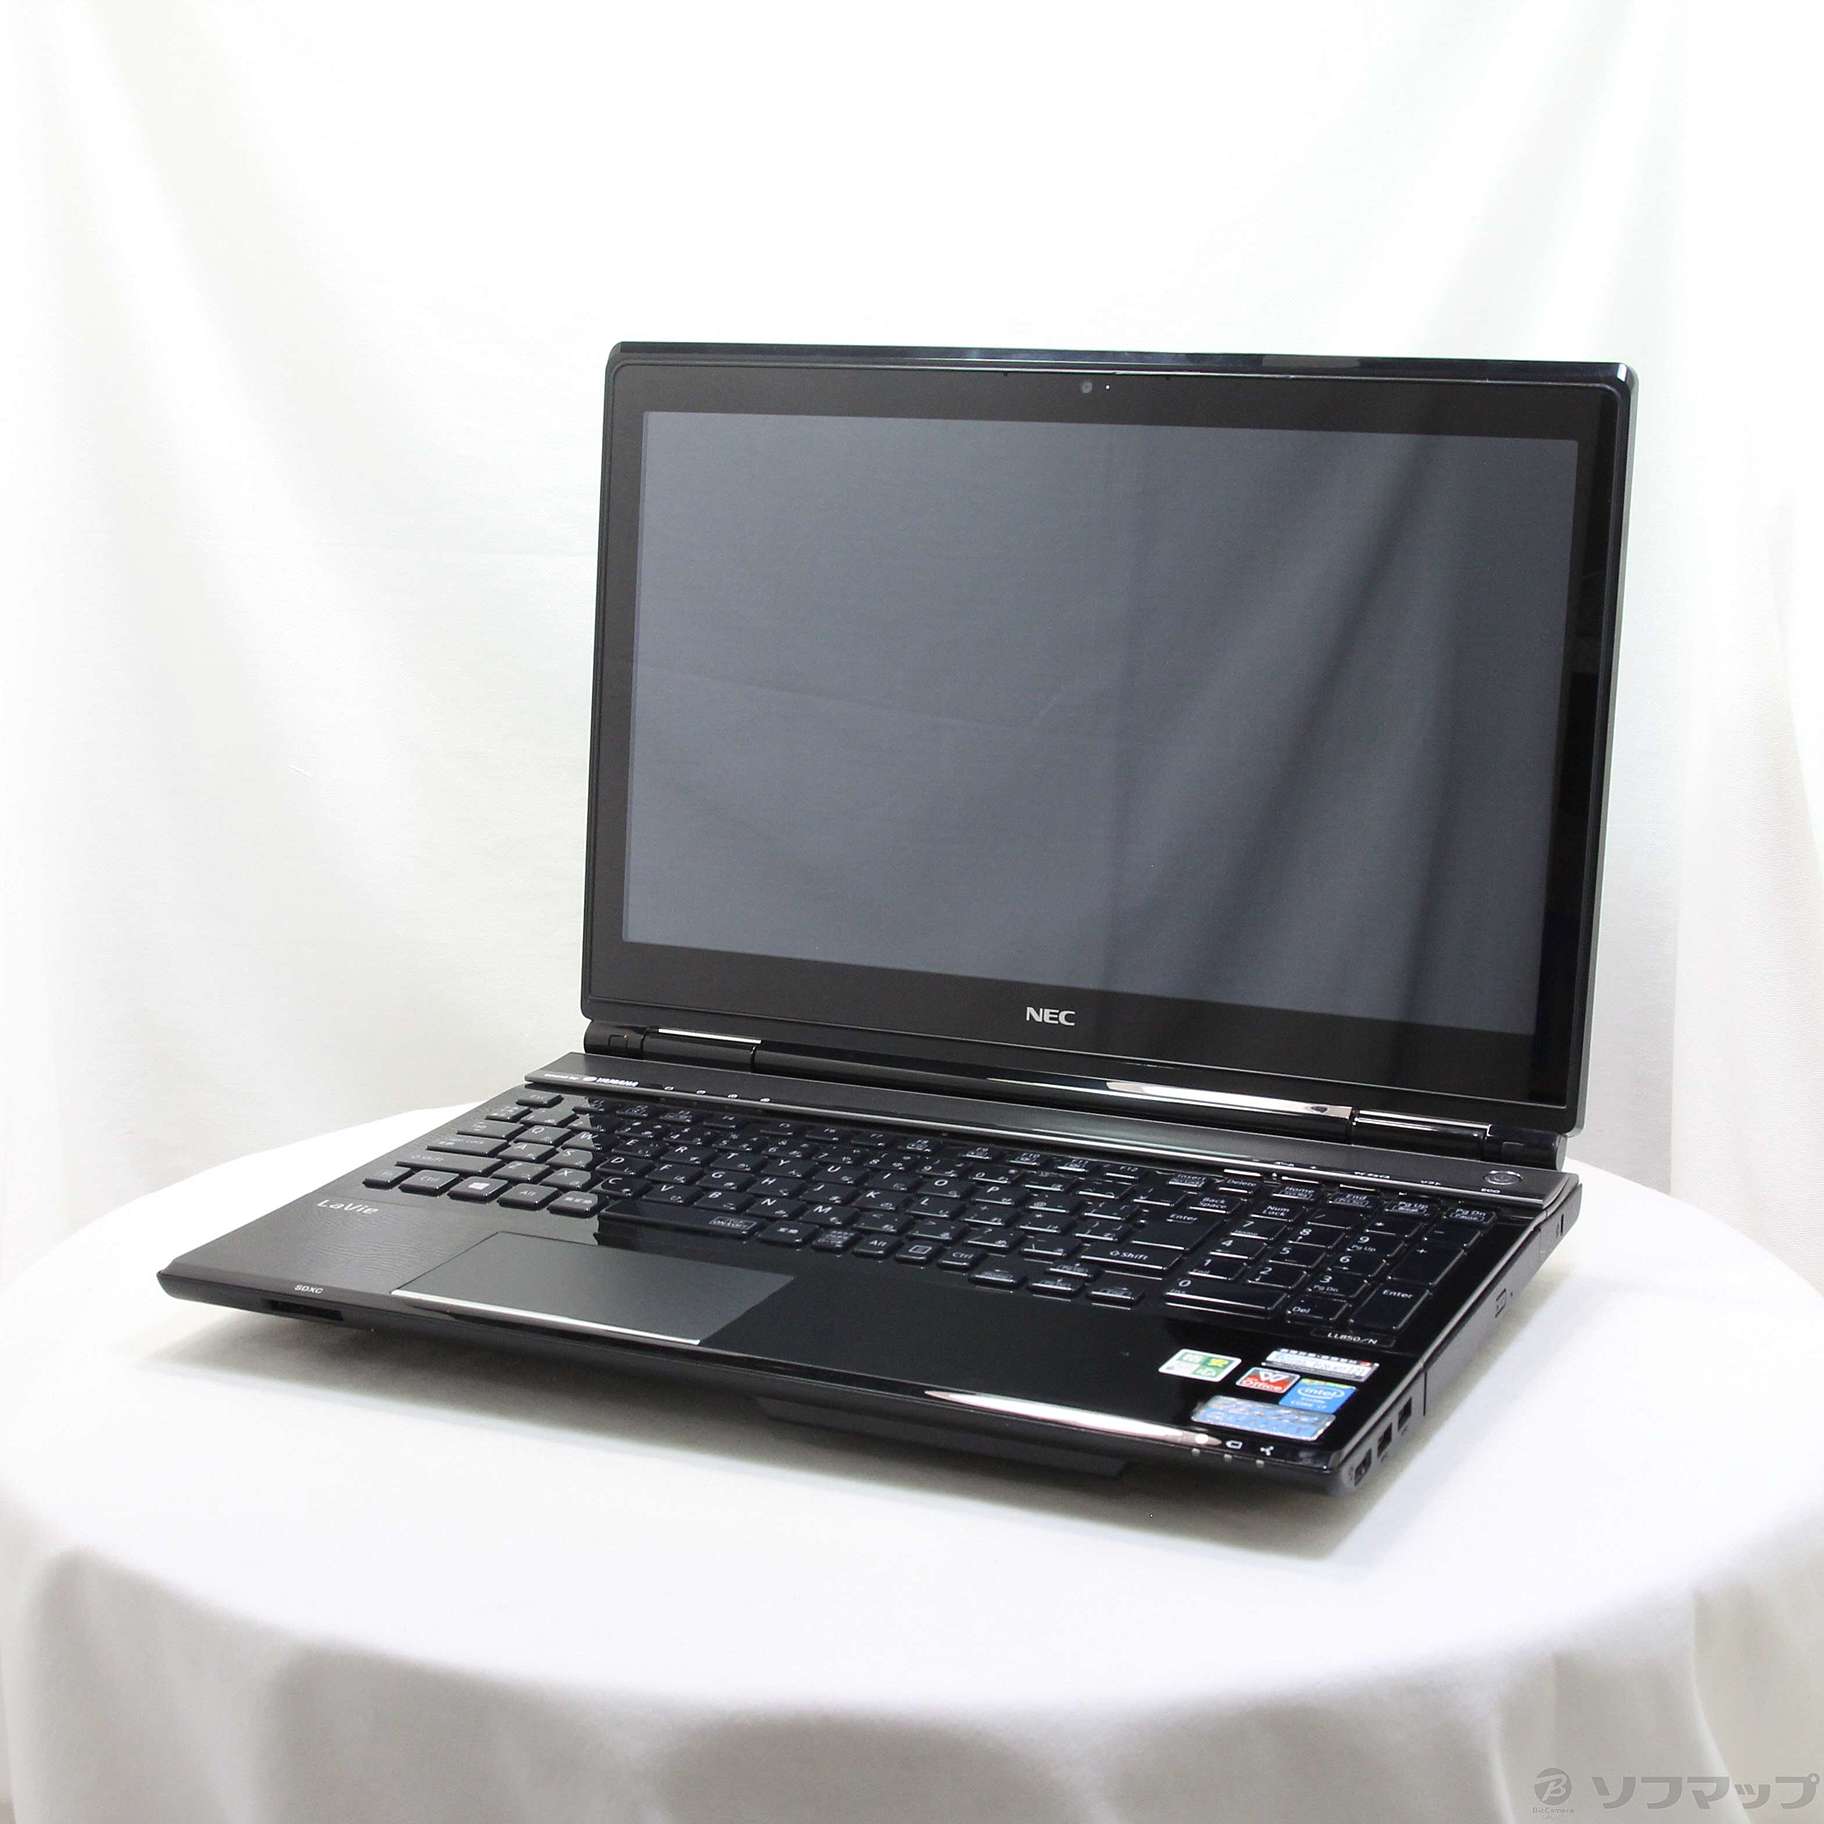 中古品非常便宜的放心的个人电脑LaVie L PC-LL850NSB水晶黑色|no邮购是